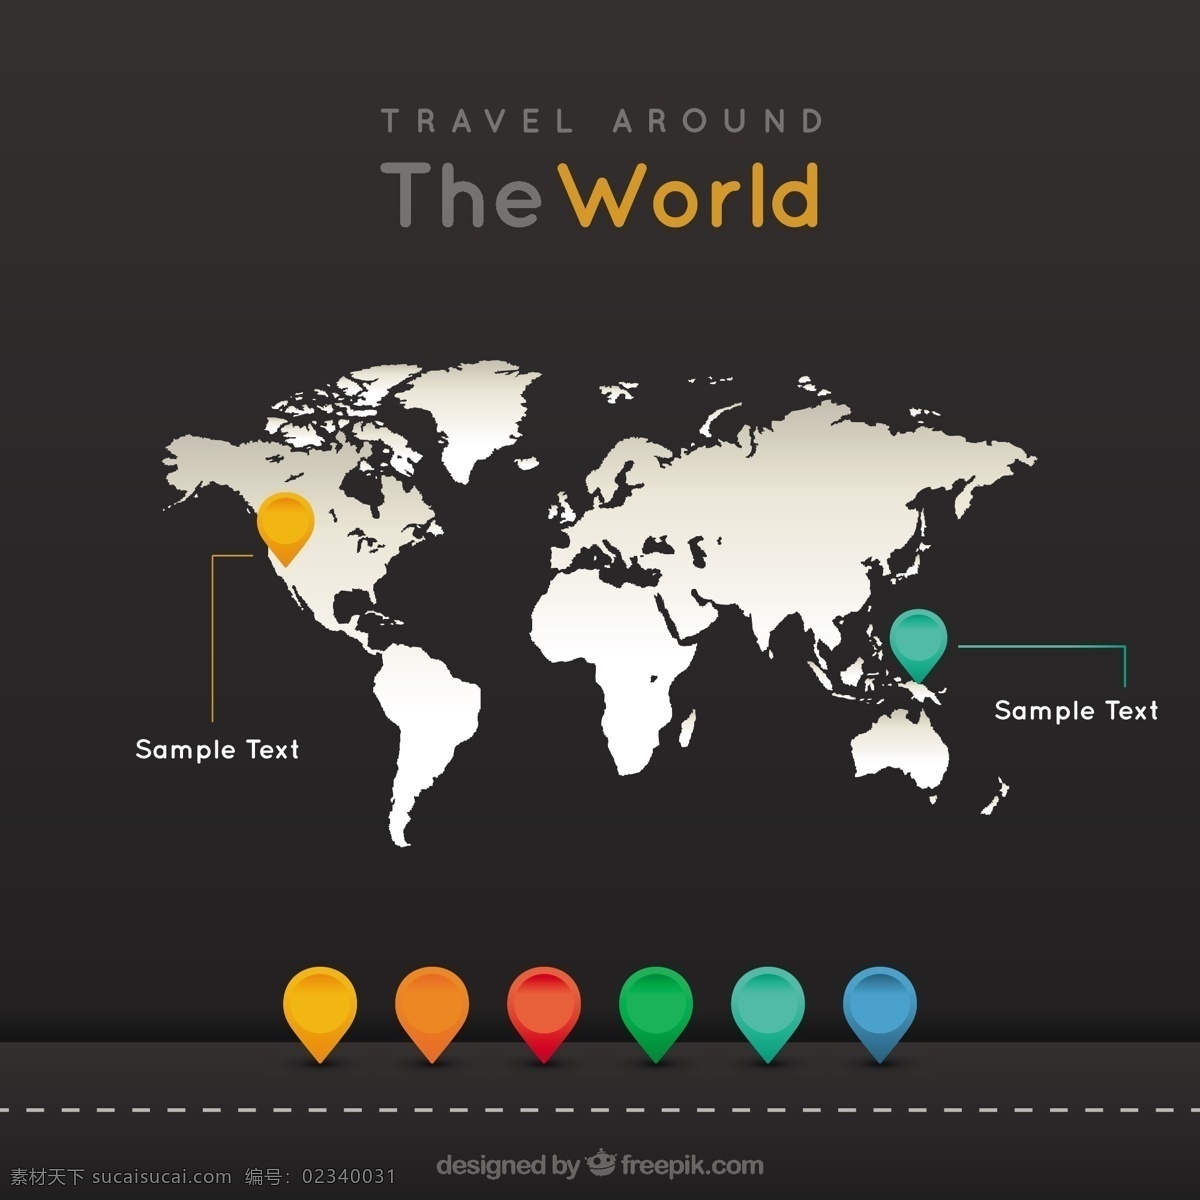 环游世界 图表 旅行 地图 世界地图 世界 模板 图形 位置 标记 指针 旅游 信息图表模板 在该 黑色